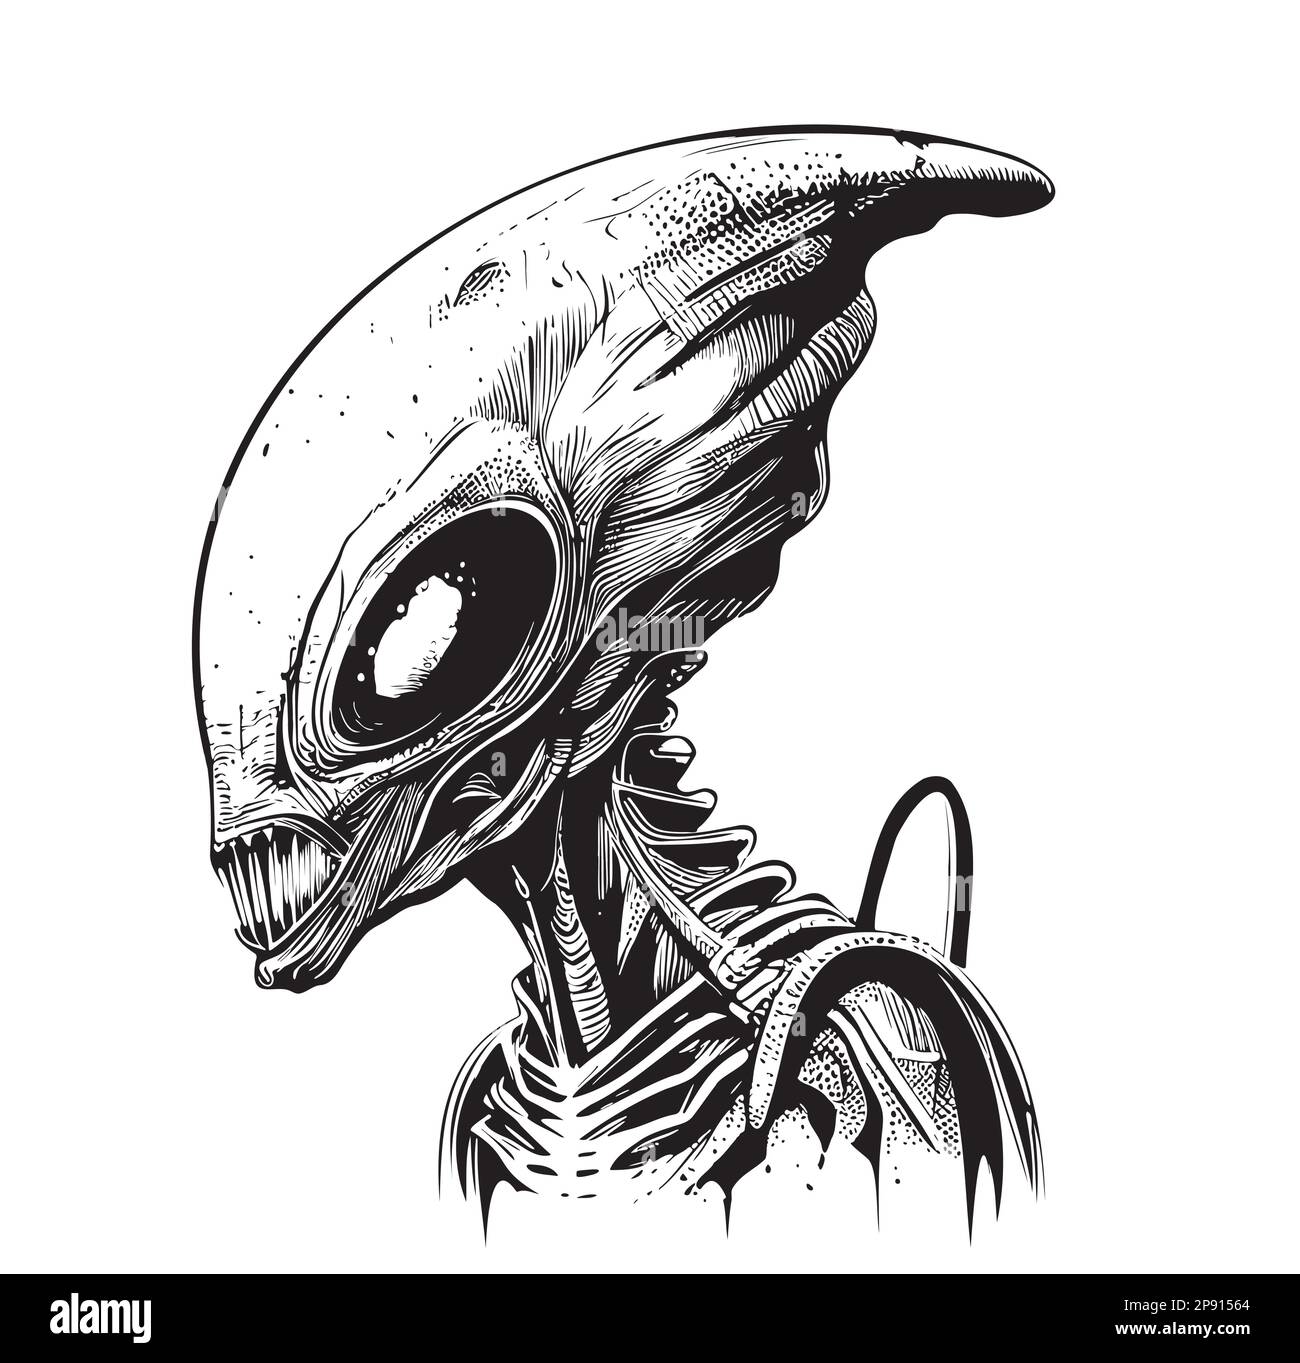 Alien Portrait handgezeichnete Zeichnung im Doodle-Stil Stock Vektor